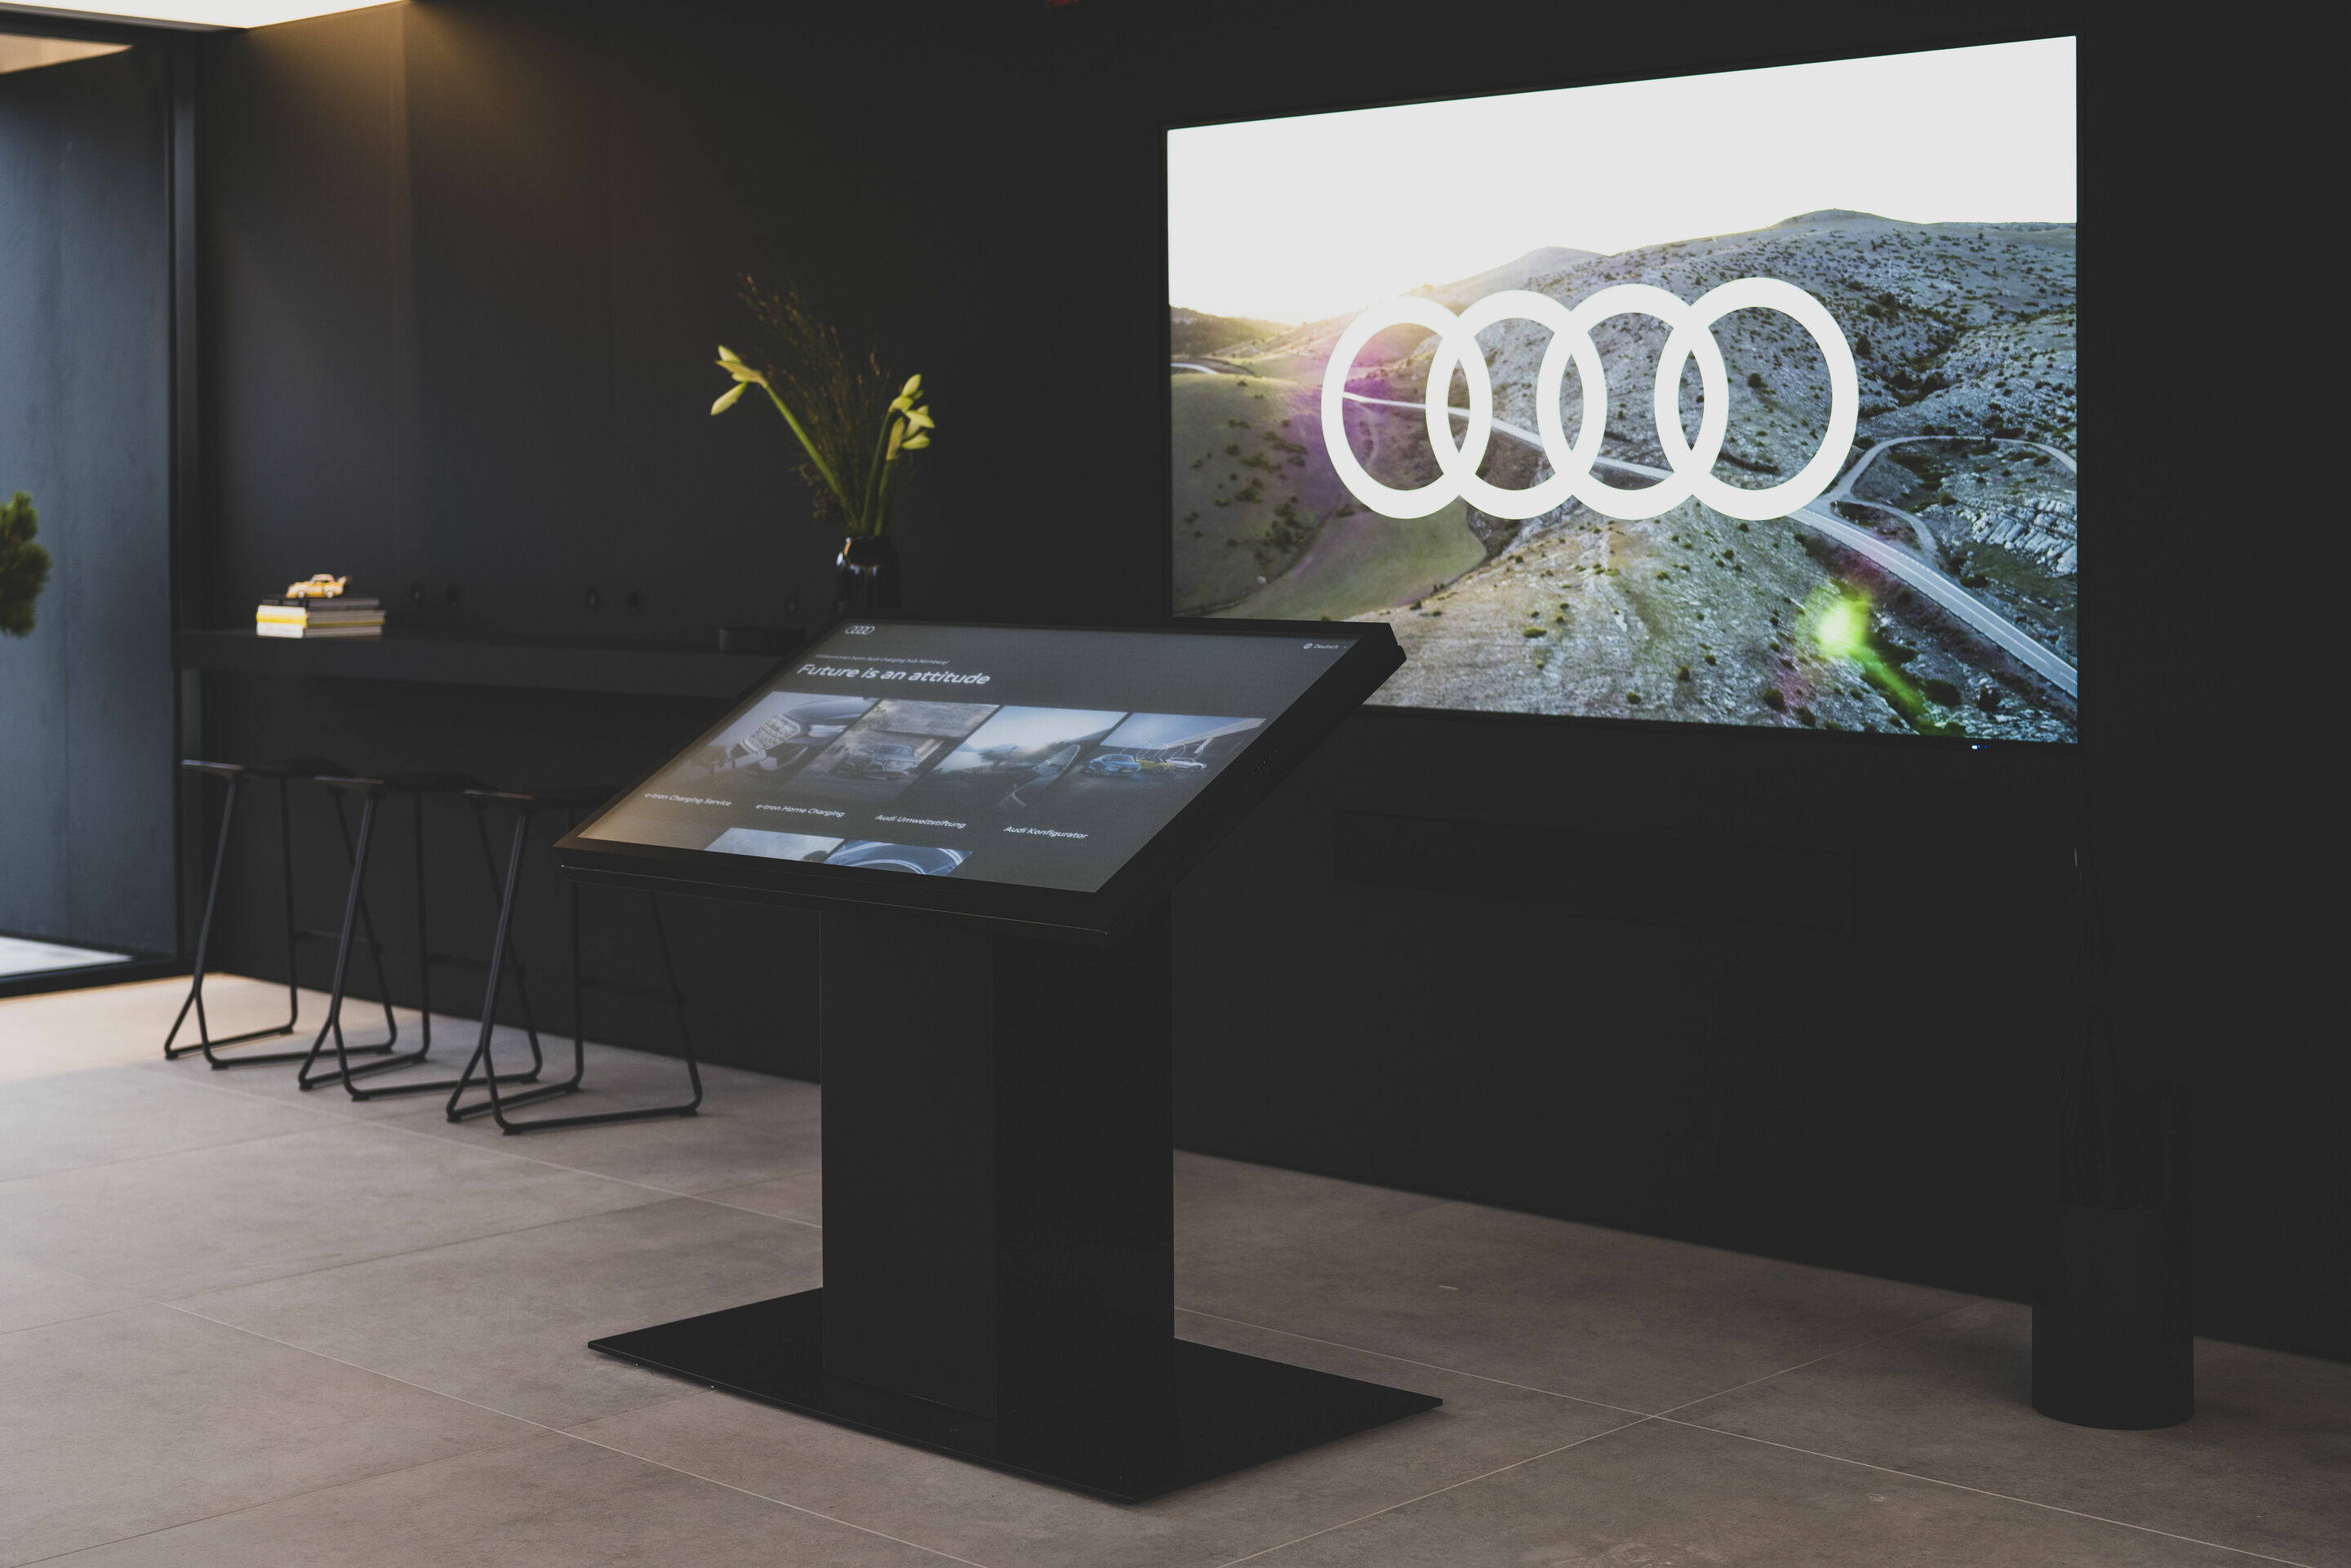 Weltneuheit: Start des Audi charging hub als städtisches Schnellladekonzept